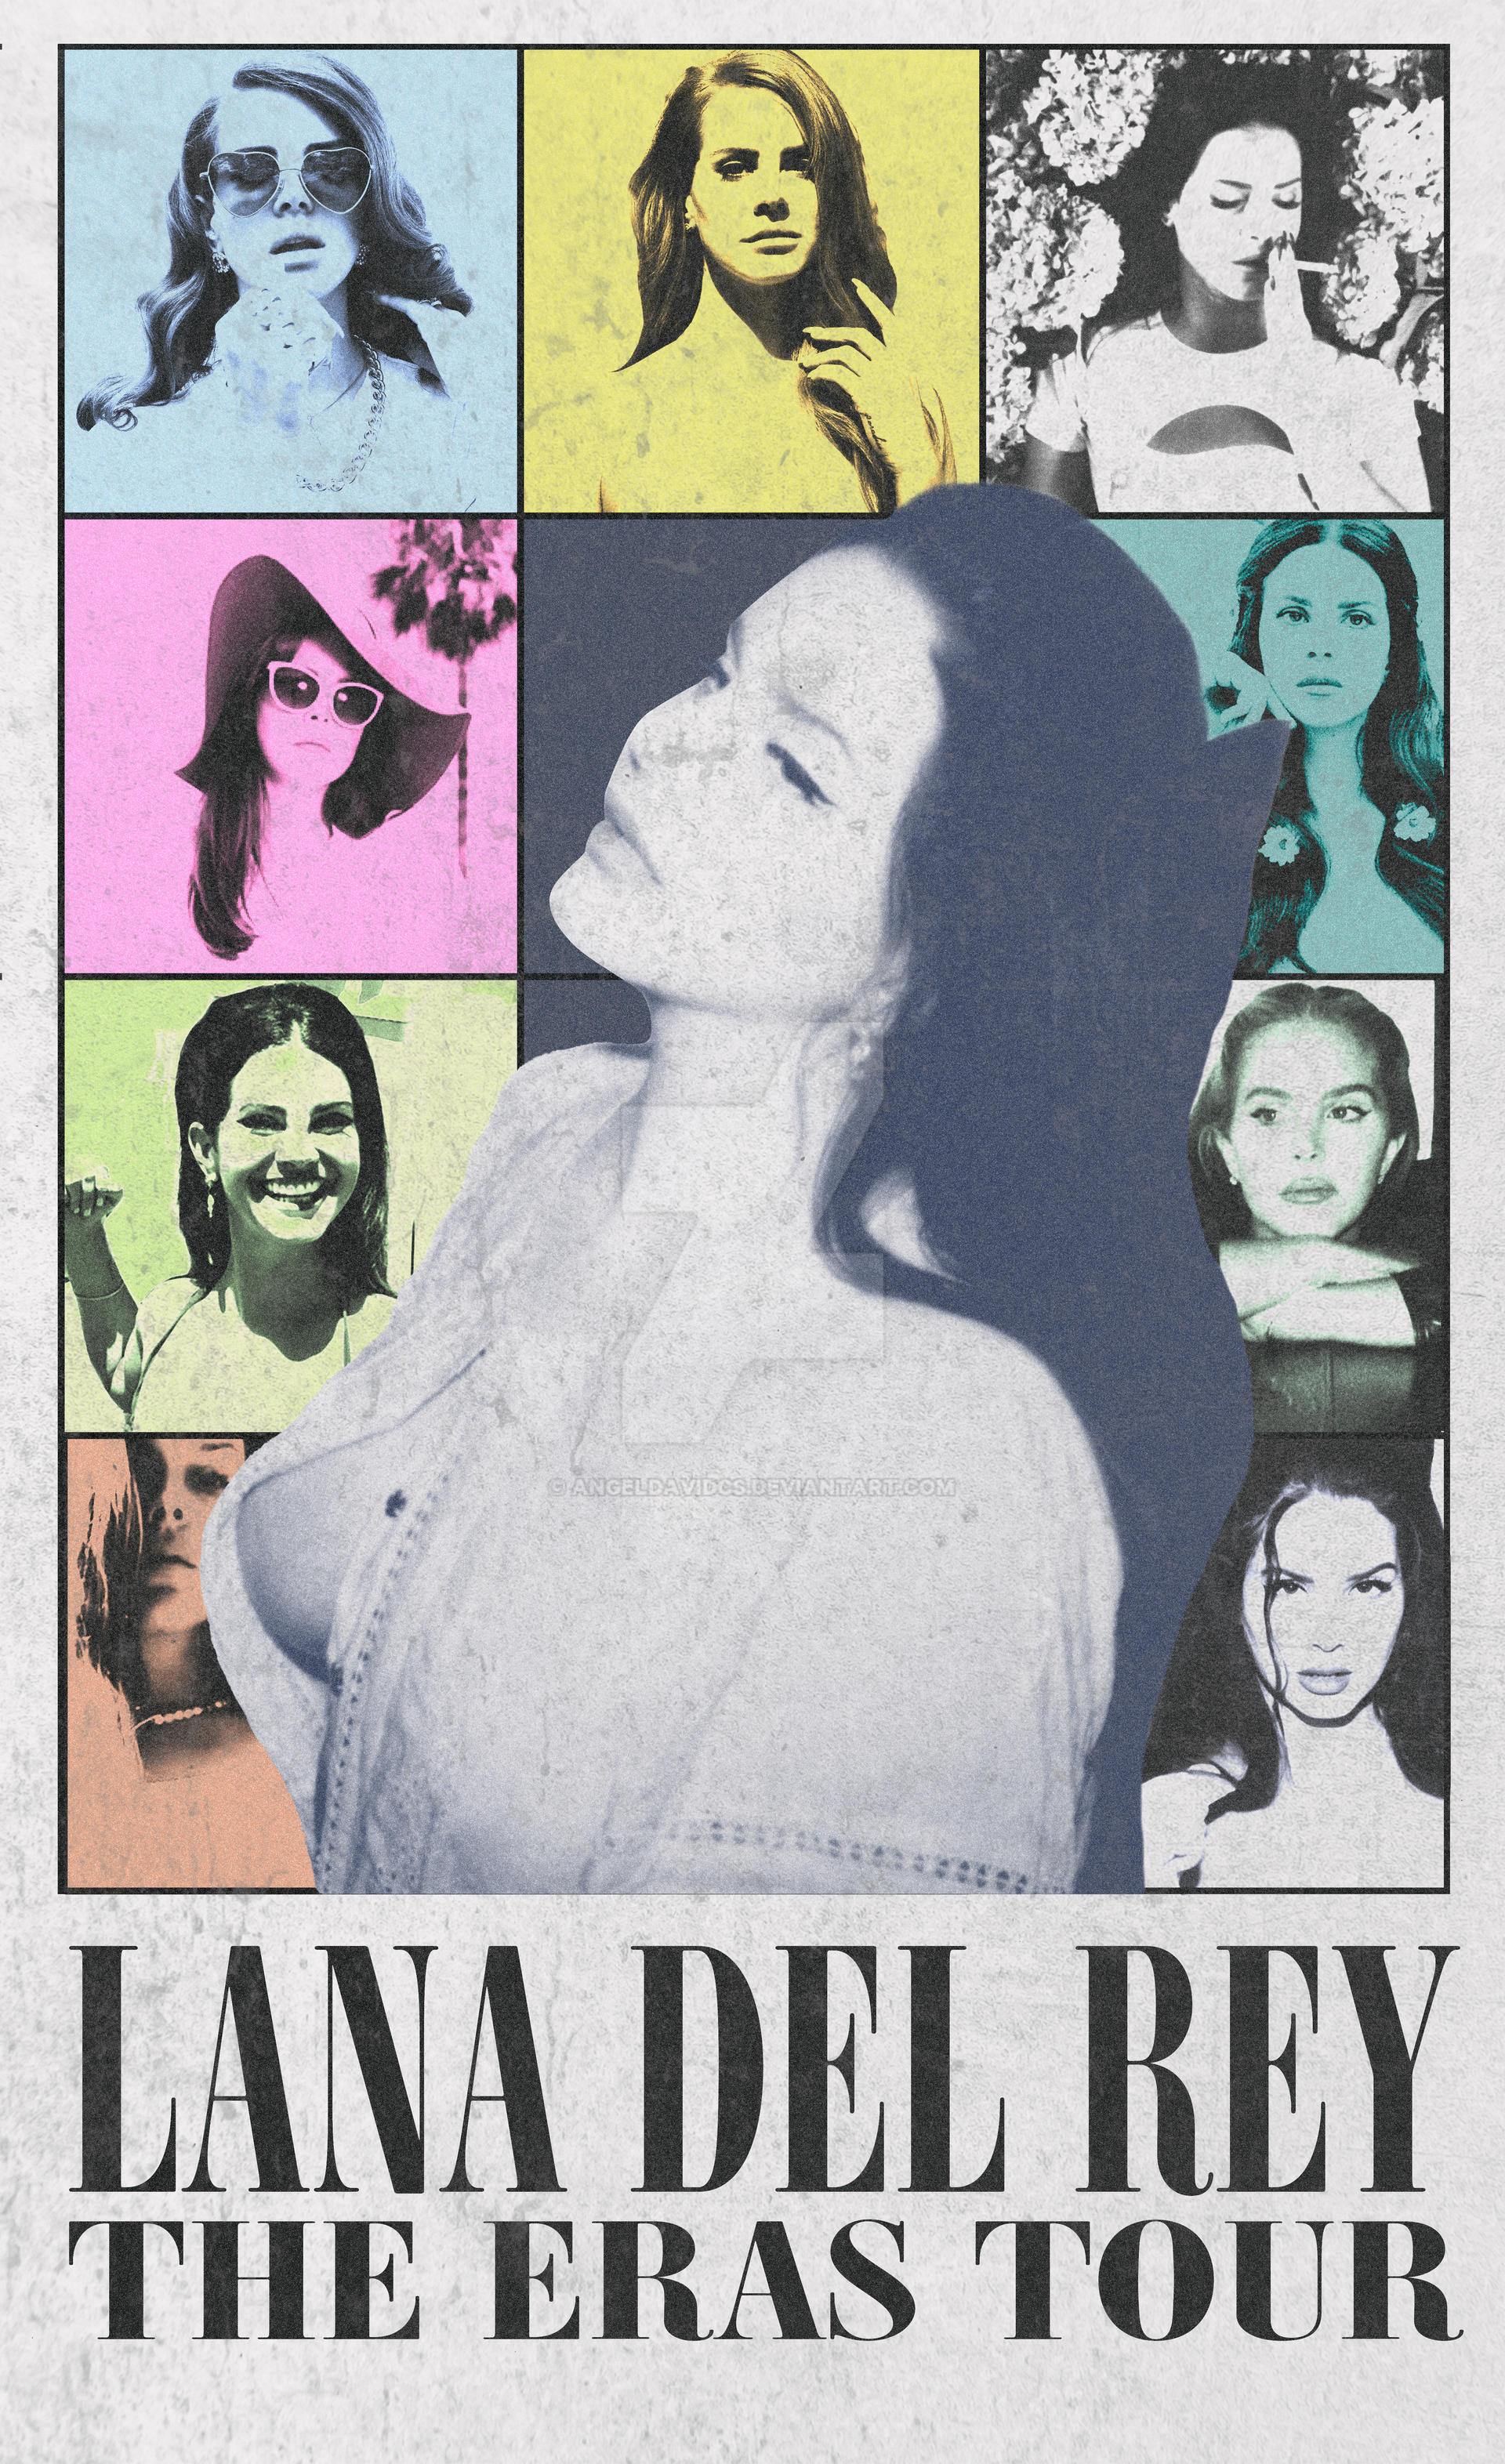 The Eras Tour Poster - Lana Del Rey Version by angeldavidcs on DeviantArt